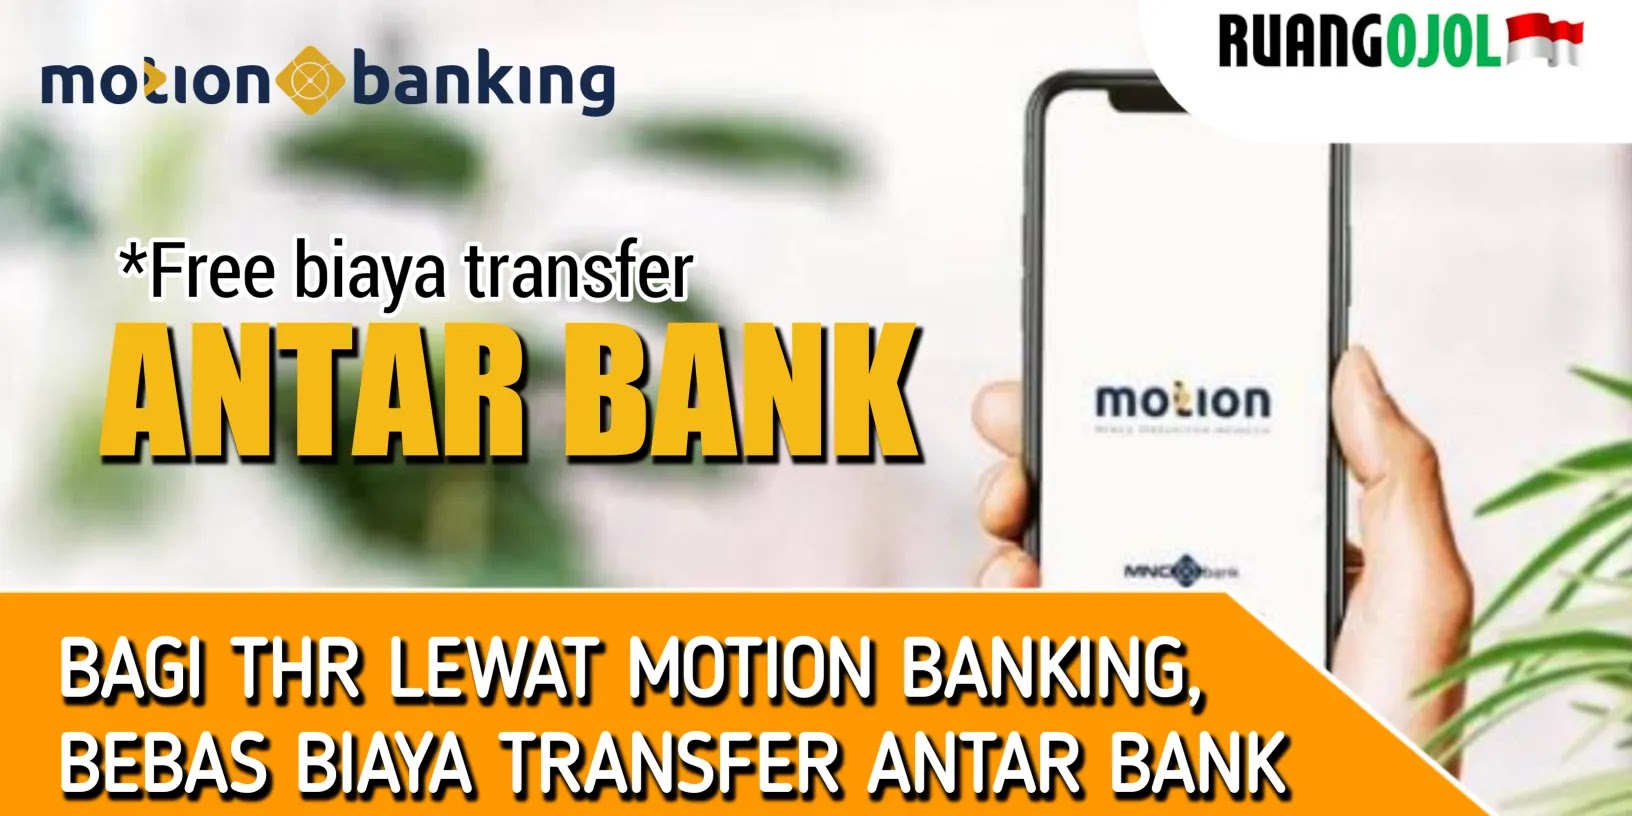 motion Banking biaya transfer antar bank gratis